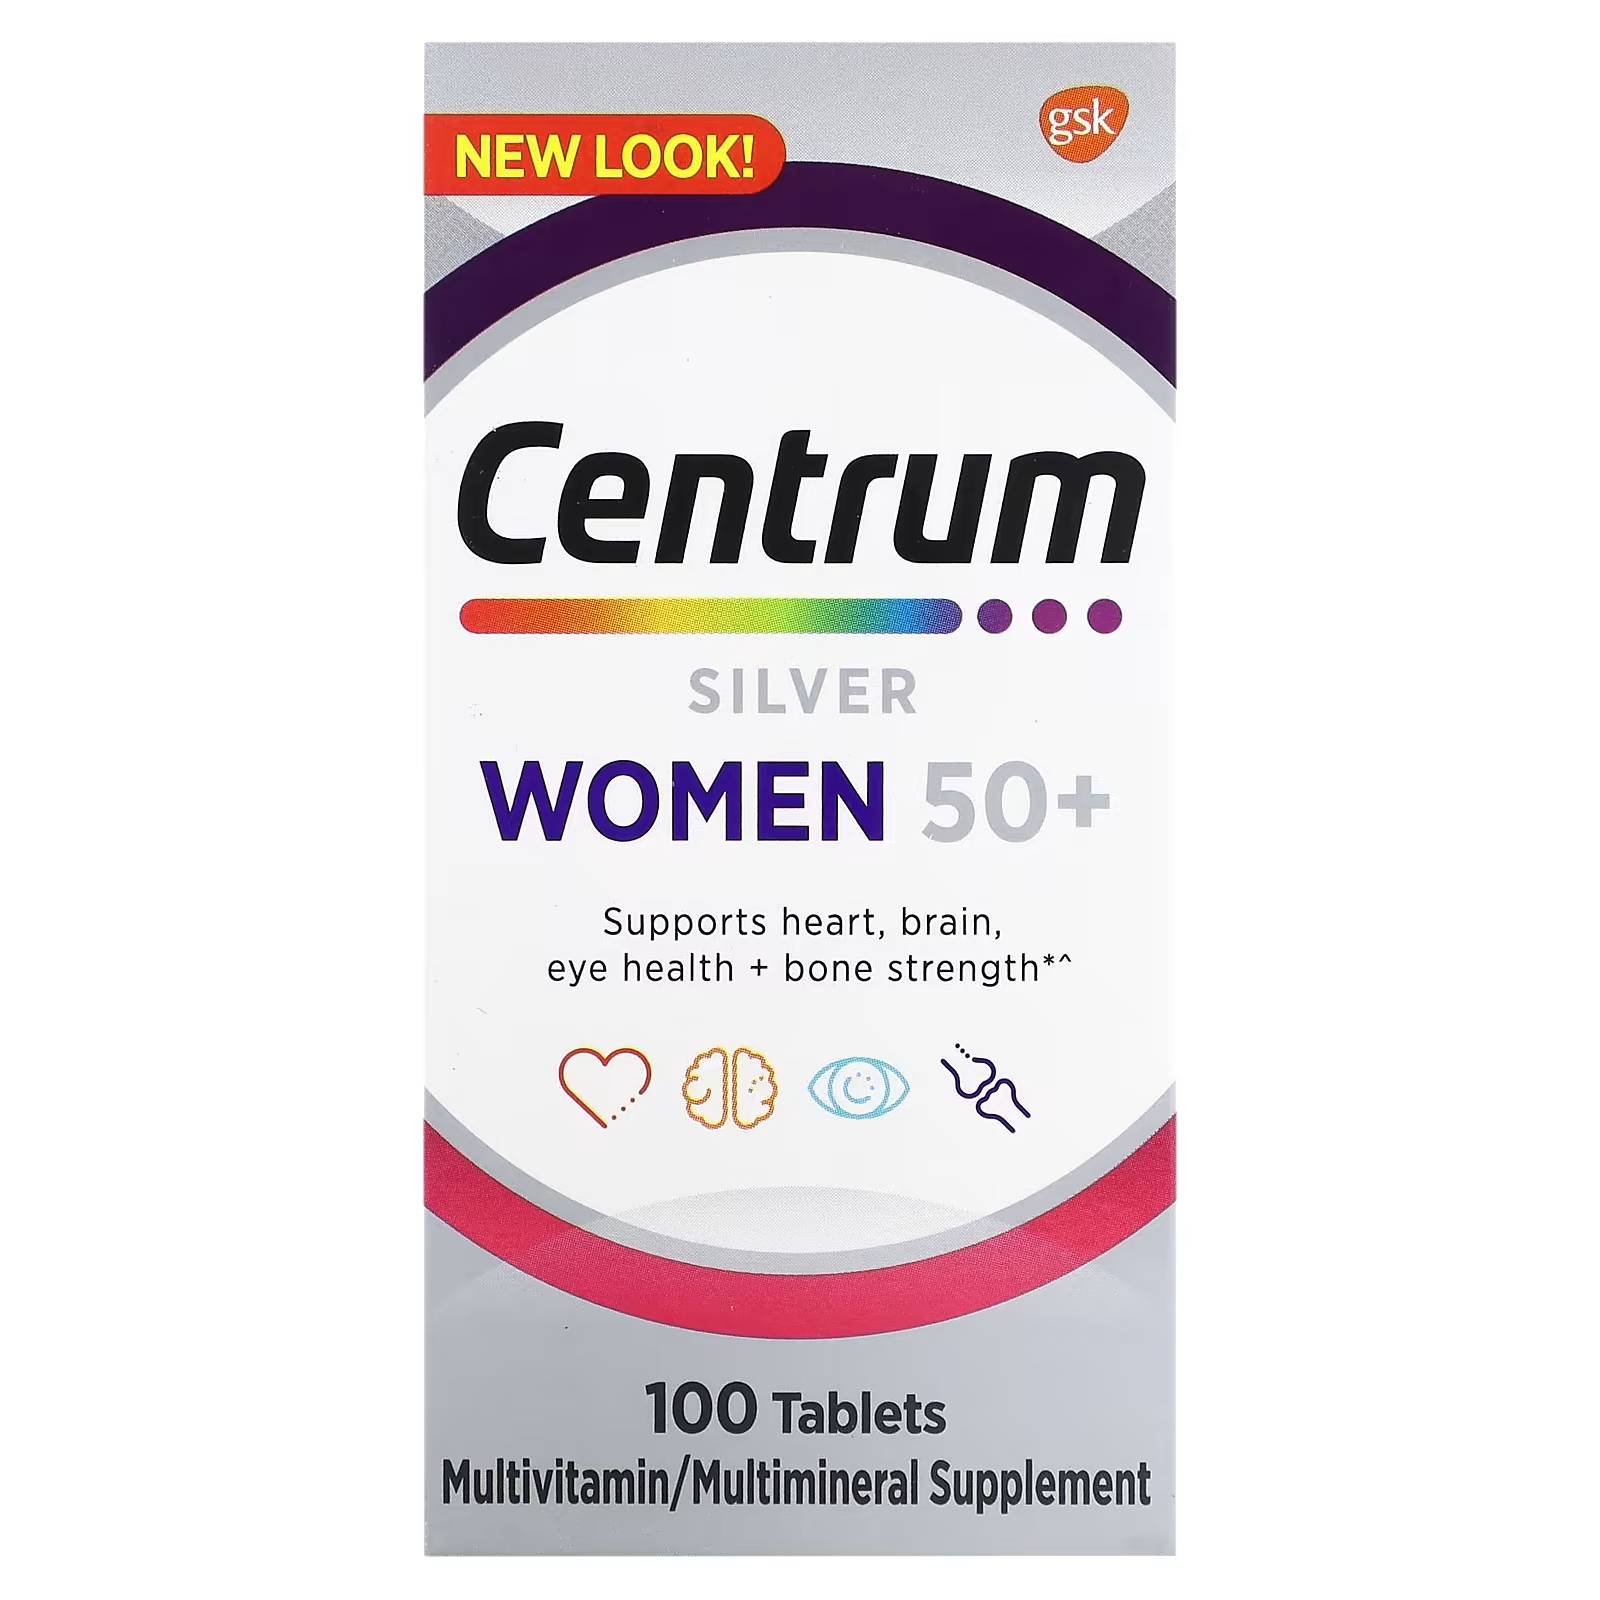 Мультивитаминная добавка Centrum Silver для женщин 50+, 100 таблеток мультивитаминная добавка centrum silver для женщин 50 100 таблеток